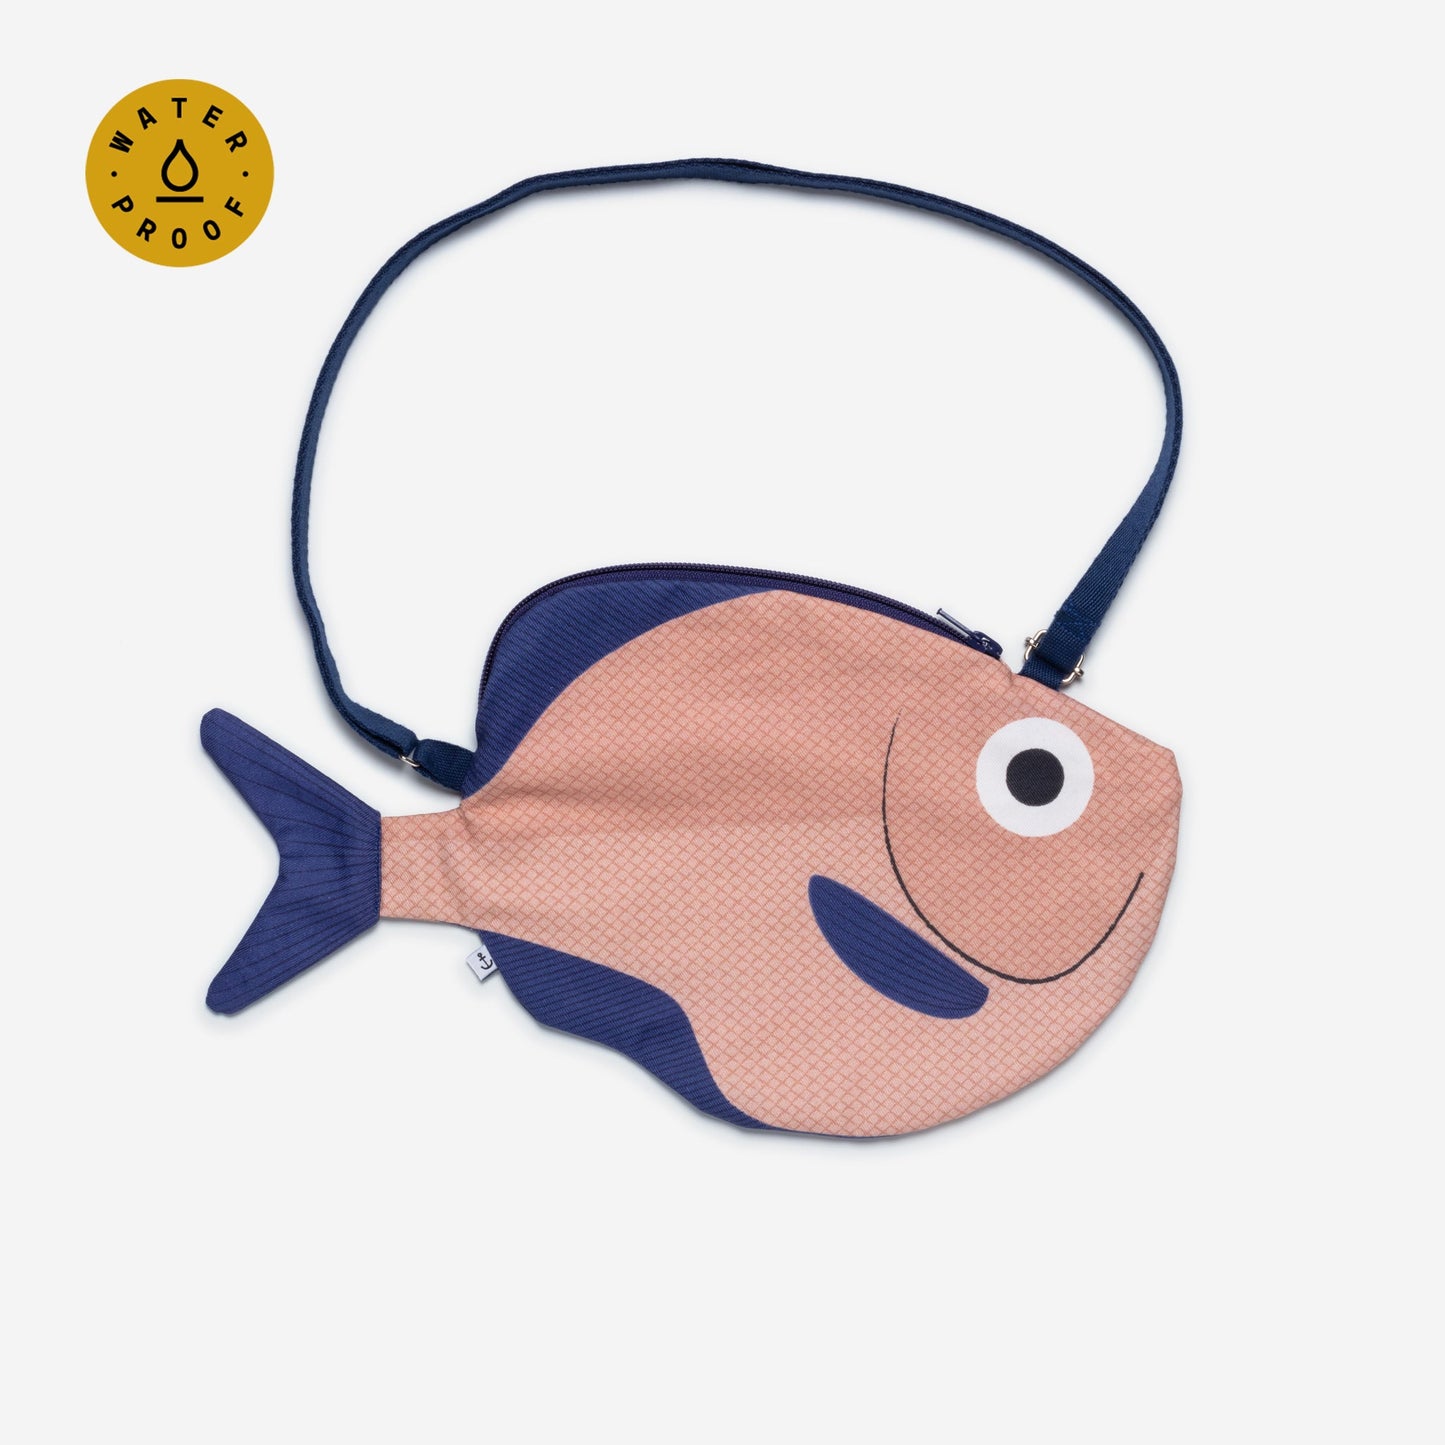 Hatchetfish handbag